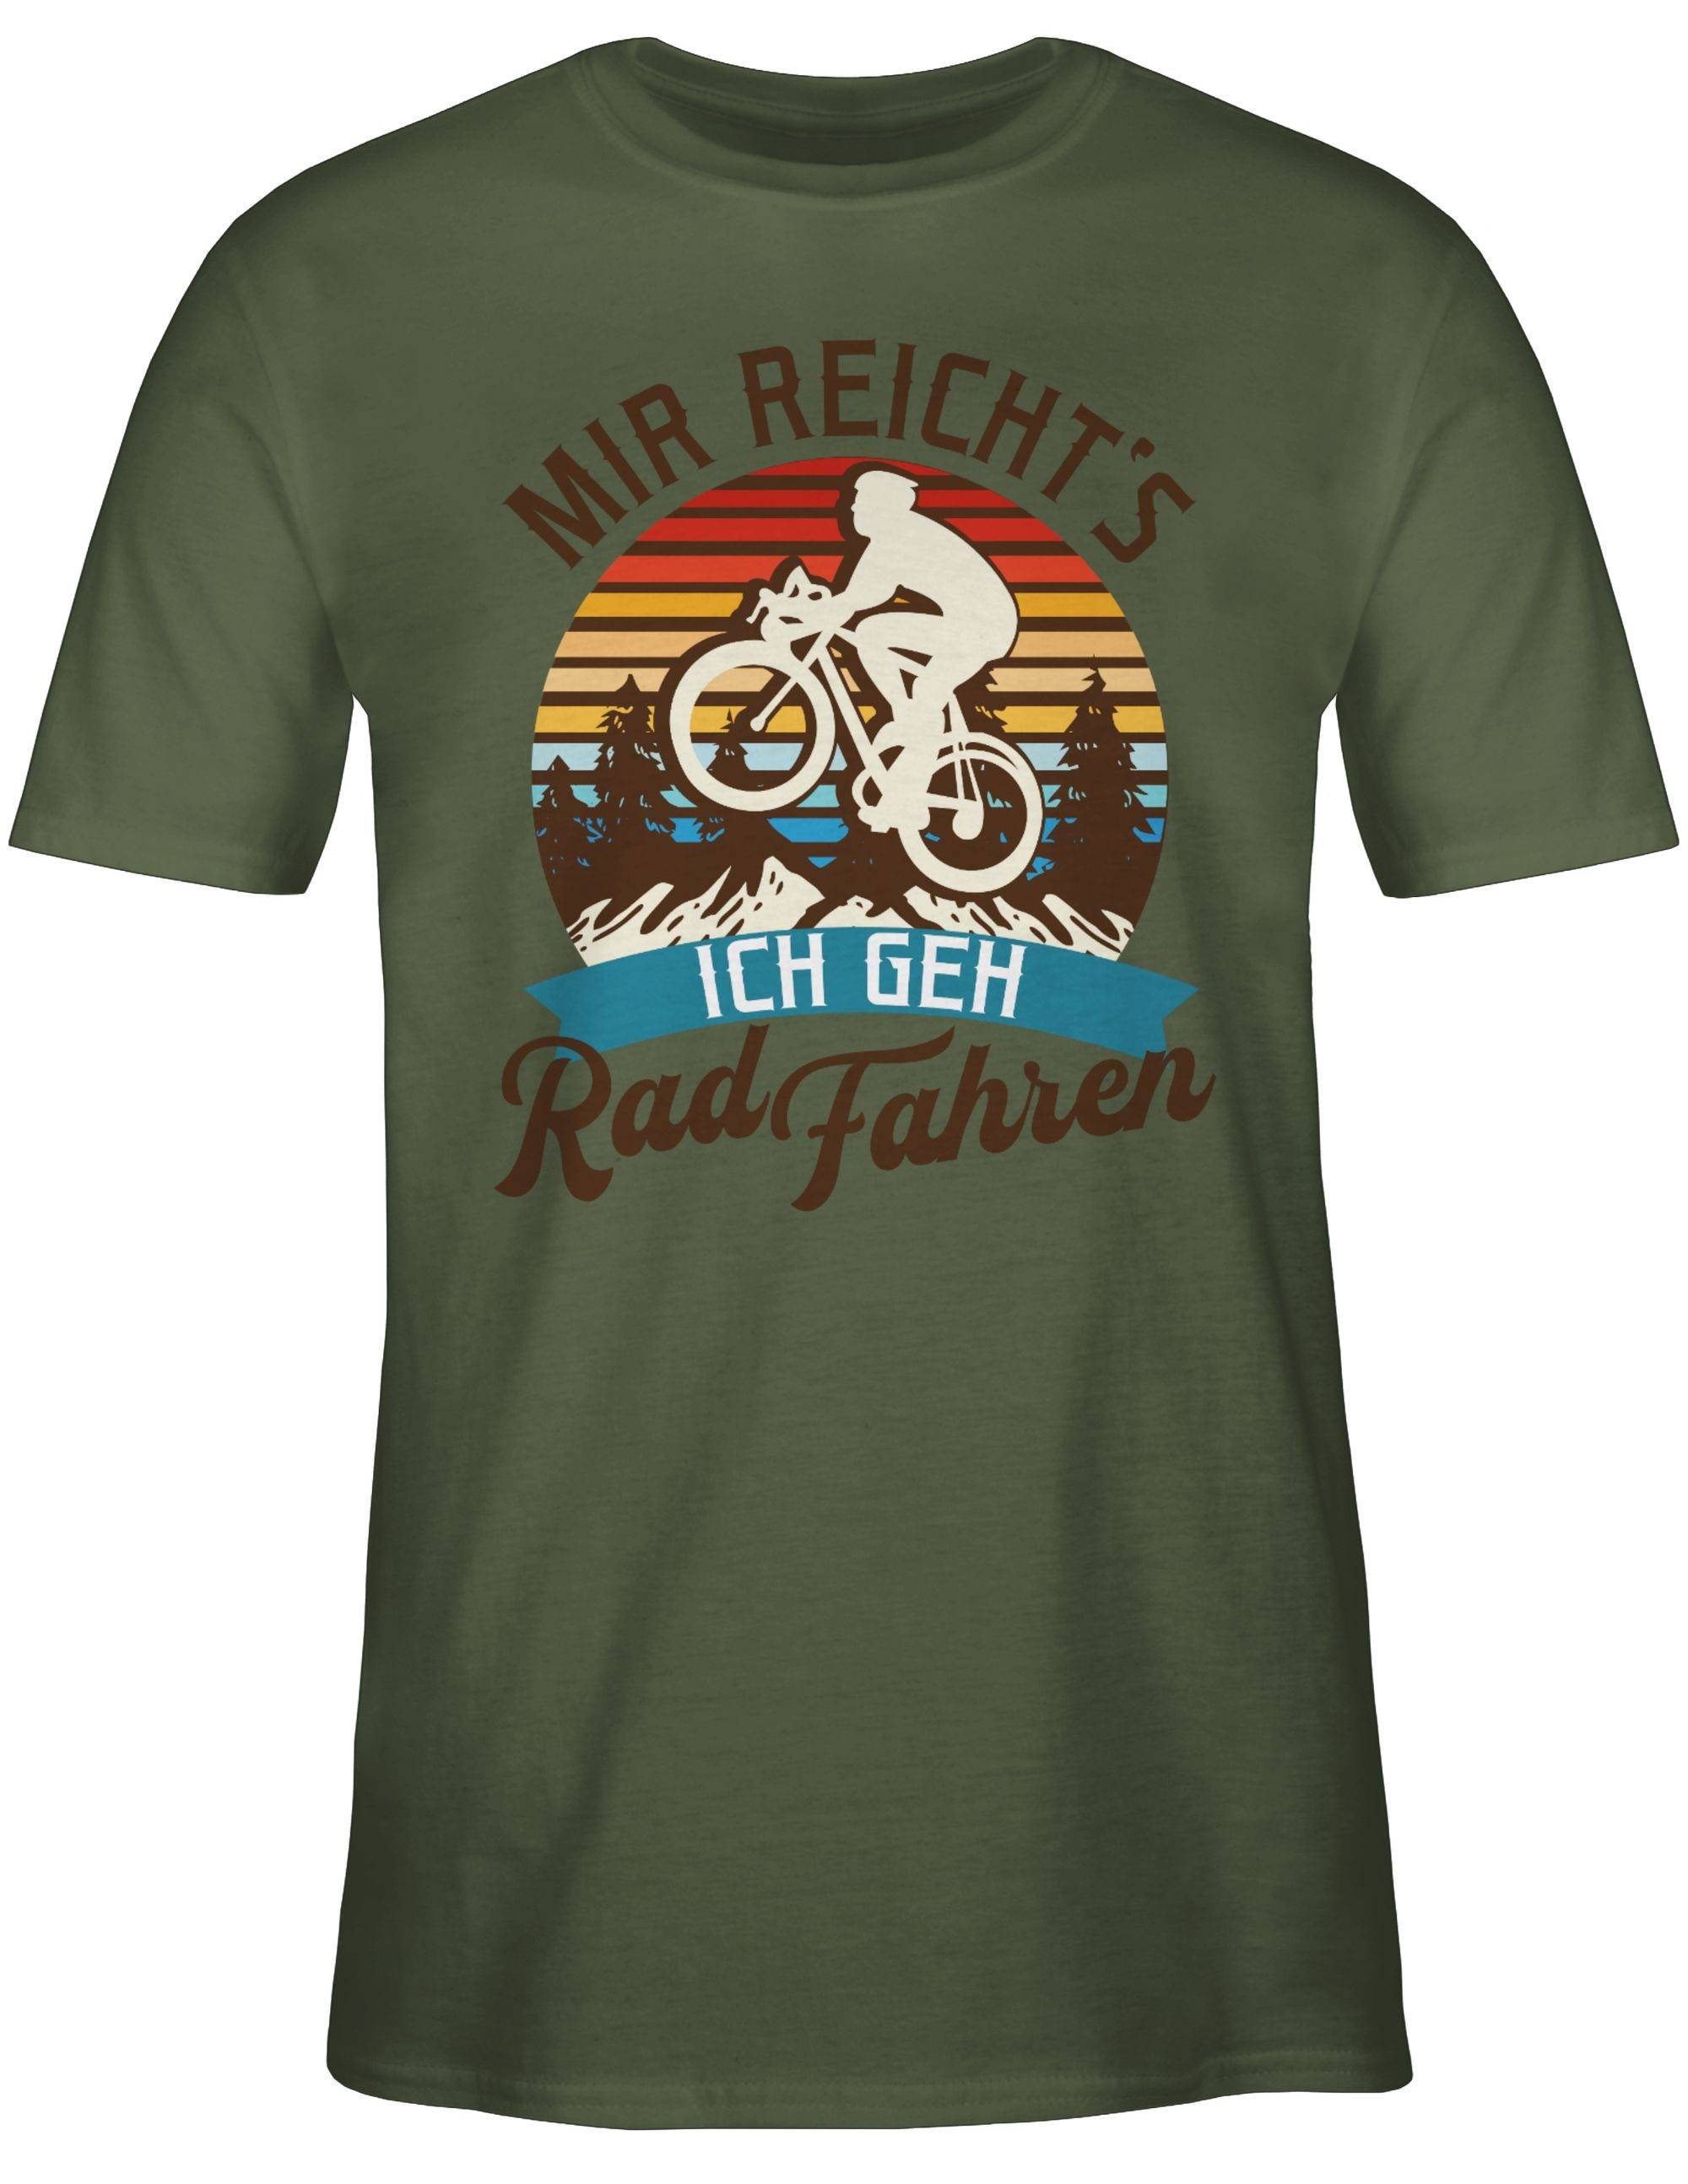 Rad Radsport Mountainbike fahren Bekleidung Grün Army 1 Mir geh Shirtracer Geschenk T-Shirt Fahrrad reicht's Fahrrad ich -